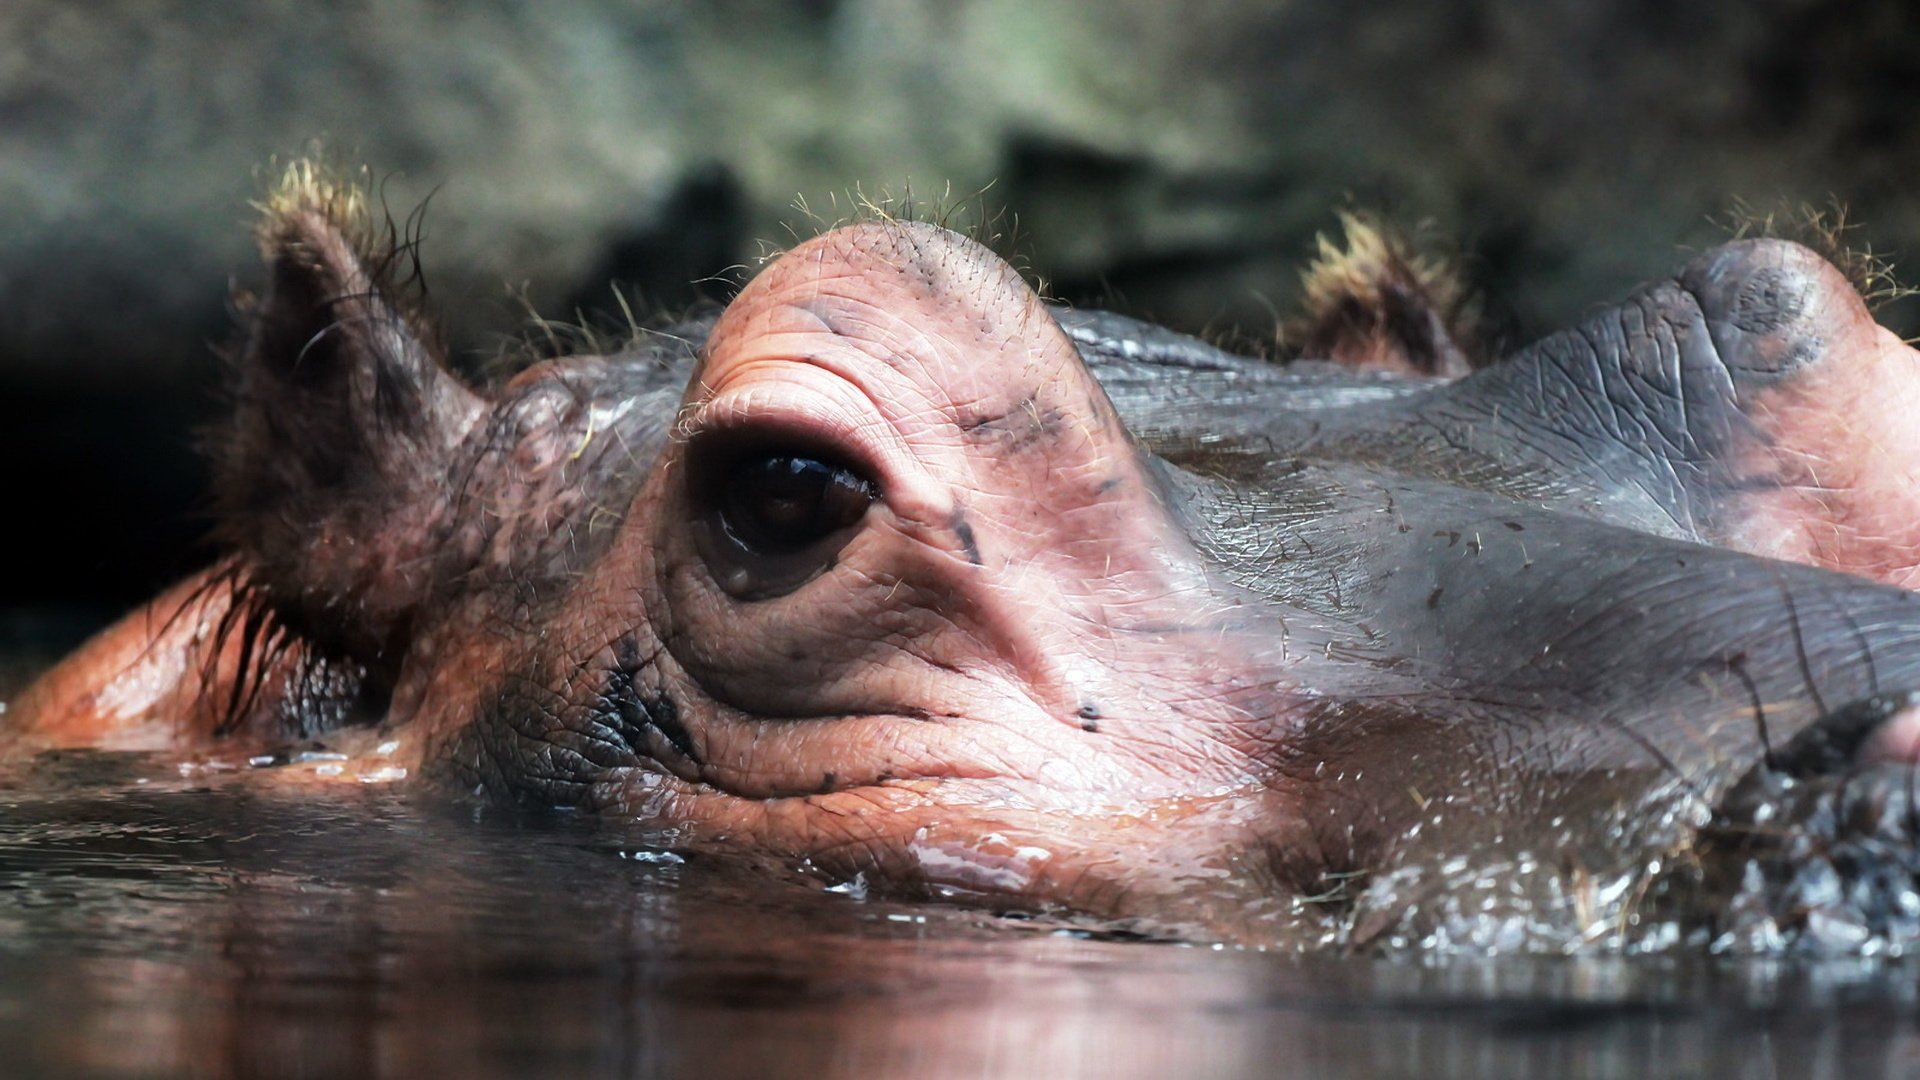 The Ears Of The Hippopotamus